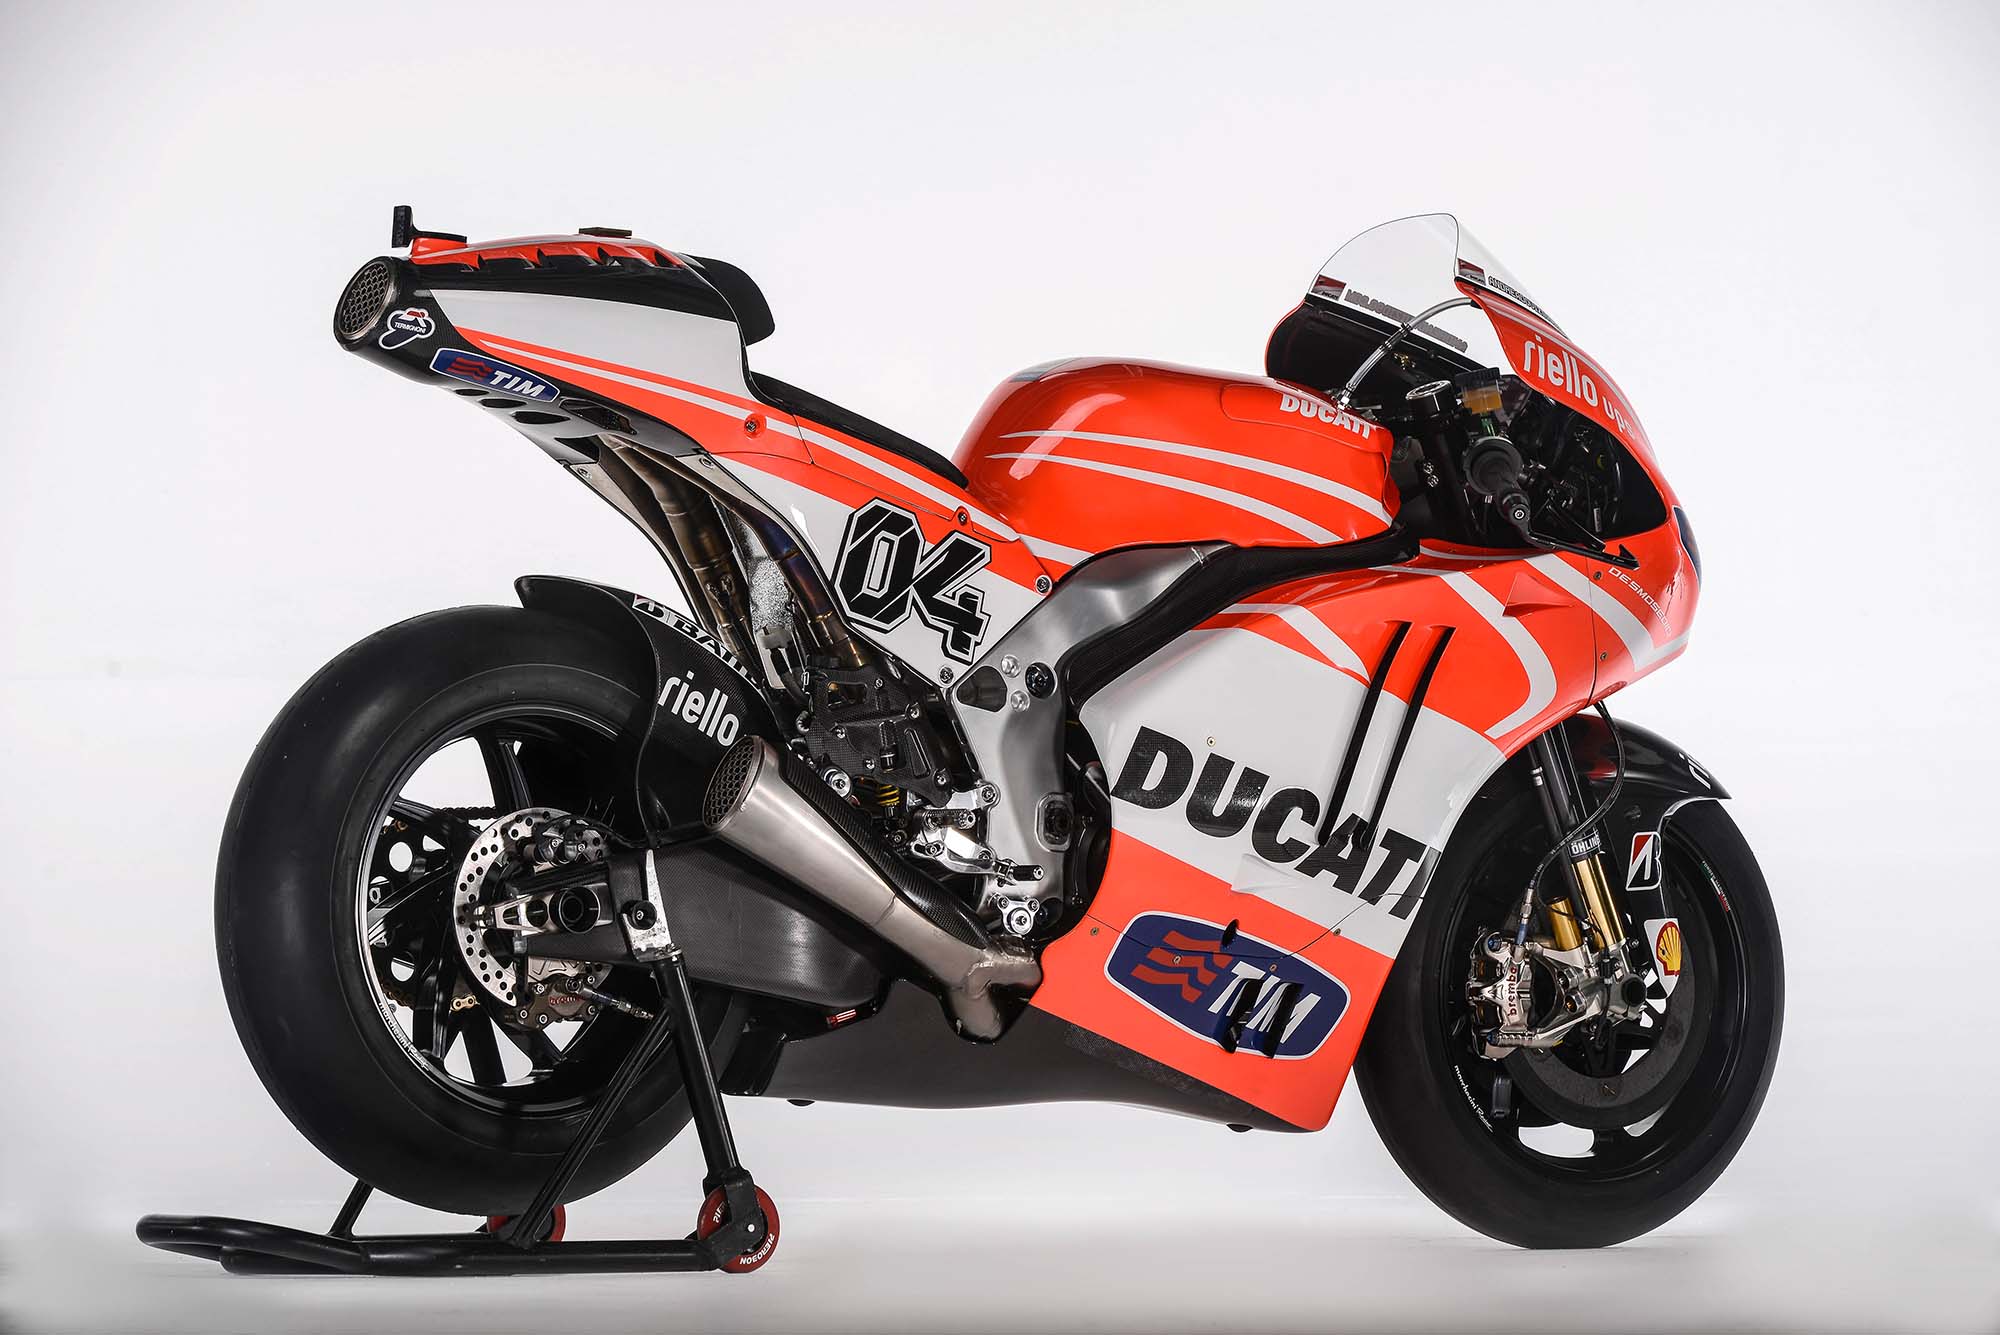 Koleksi Gambar Motor Ducati Gp Terlengkap Stamodifikasi